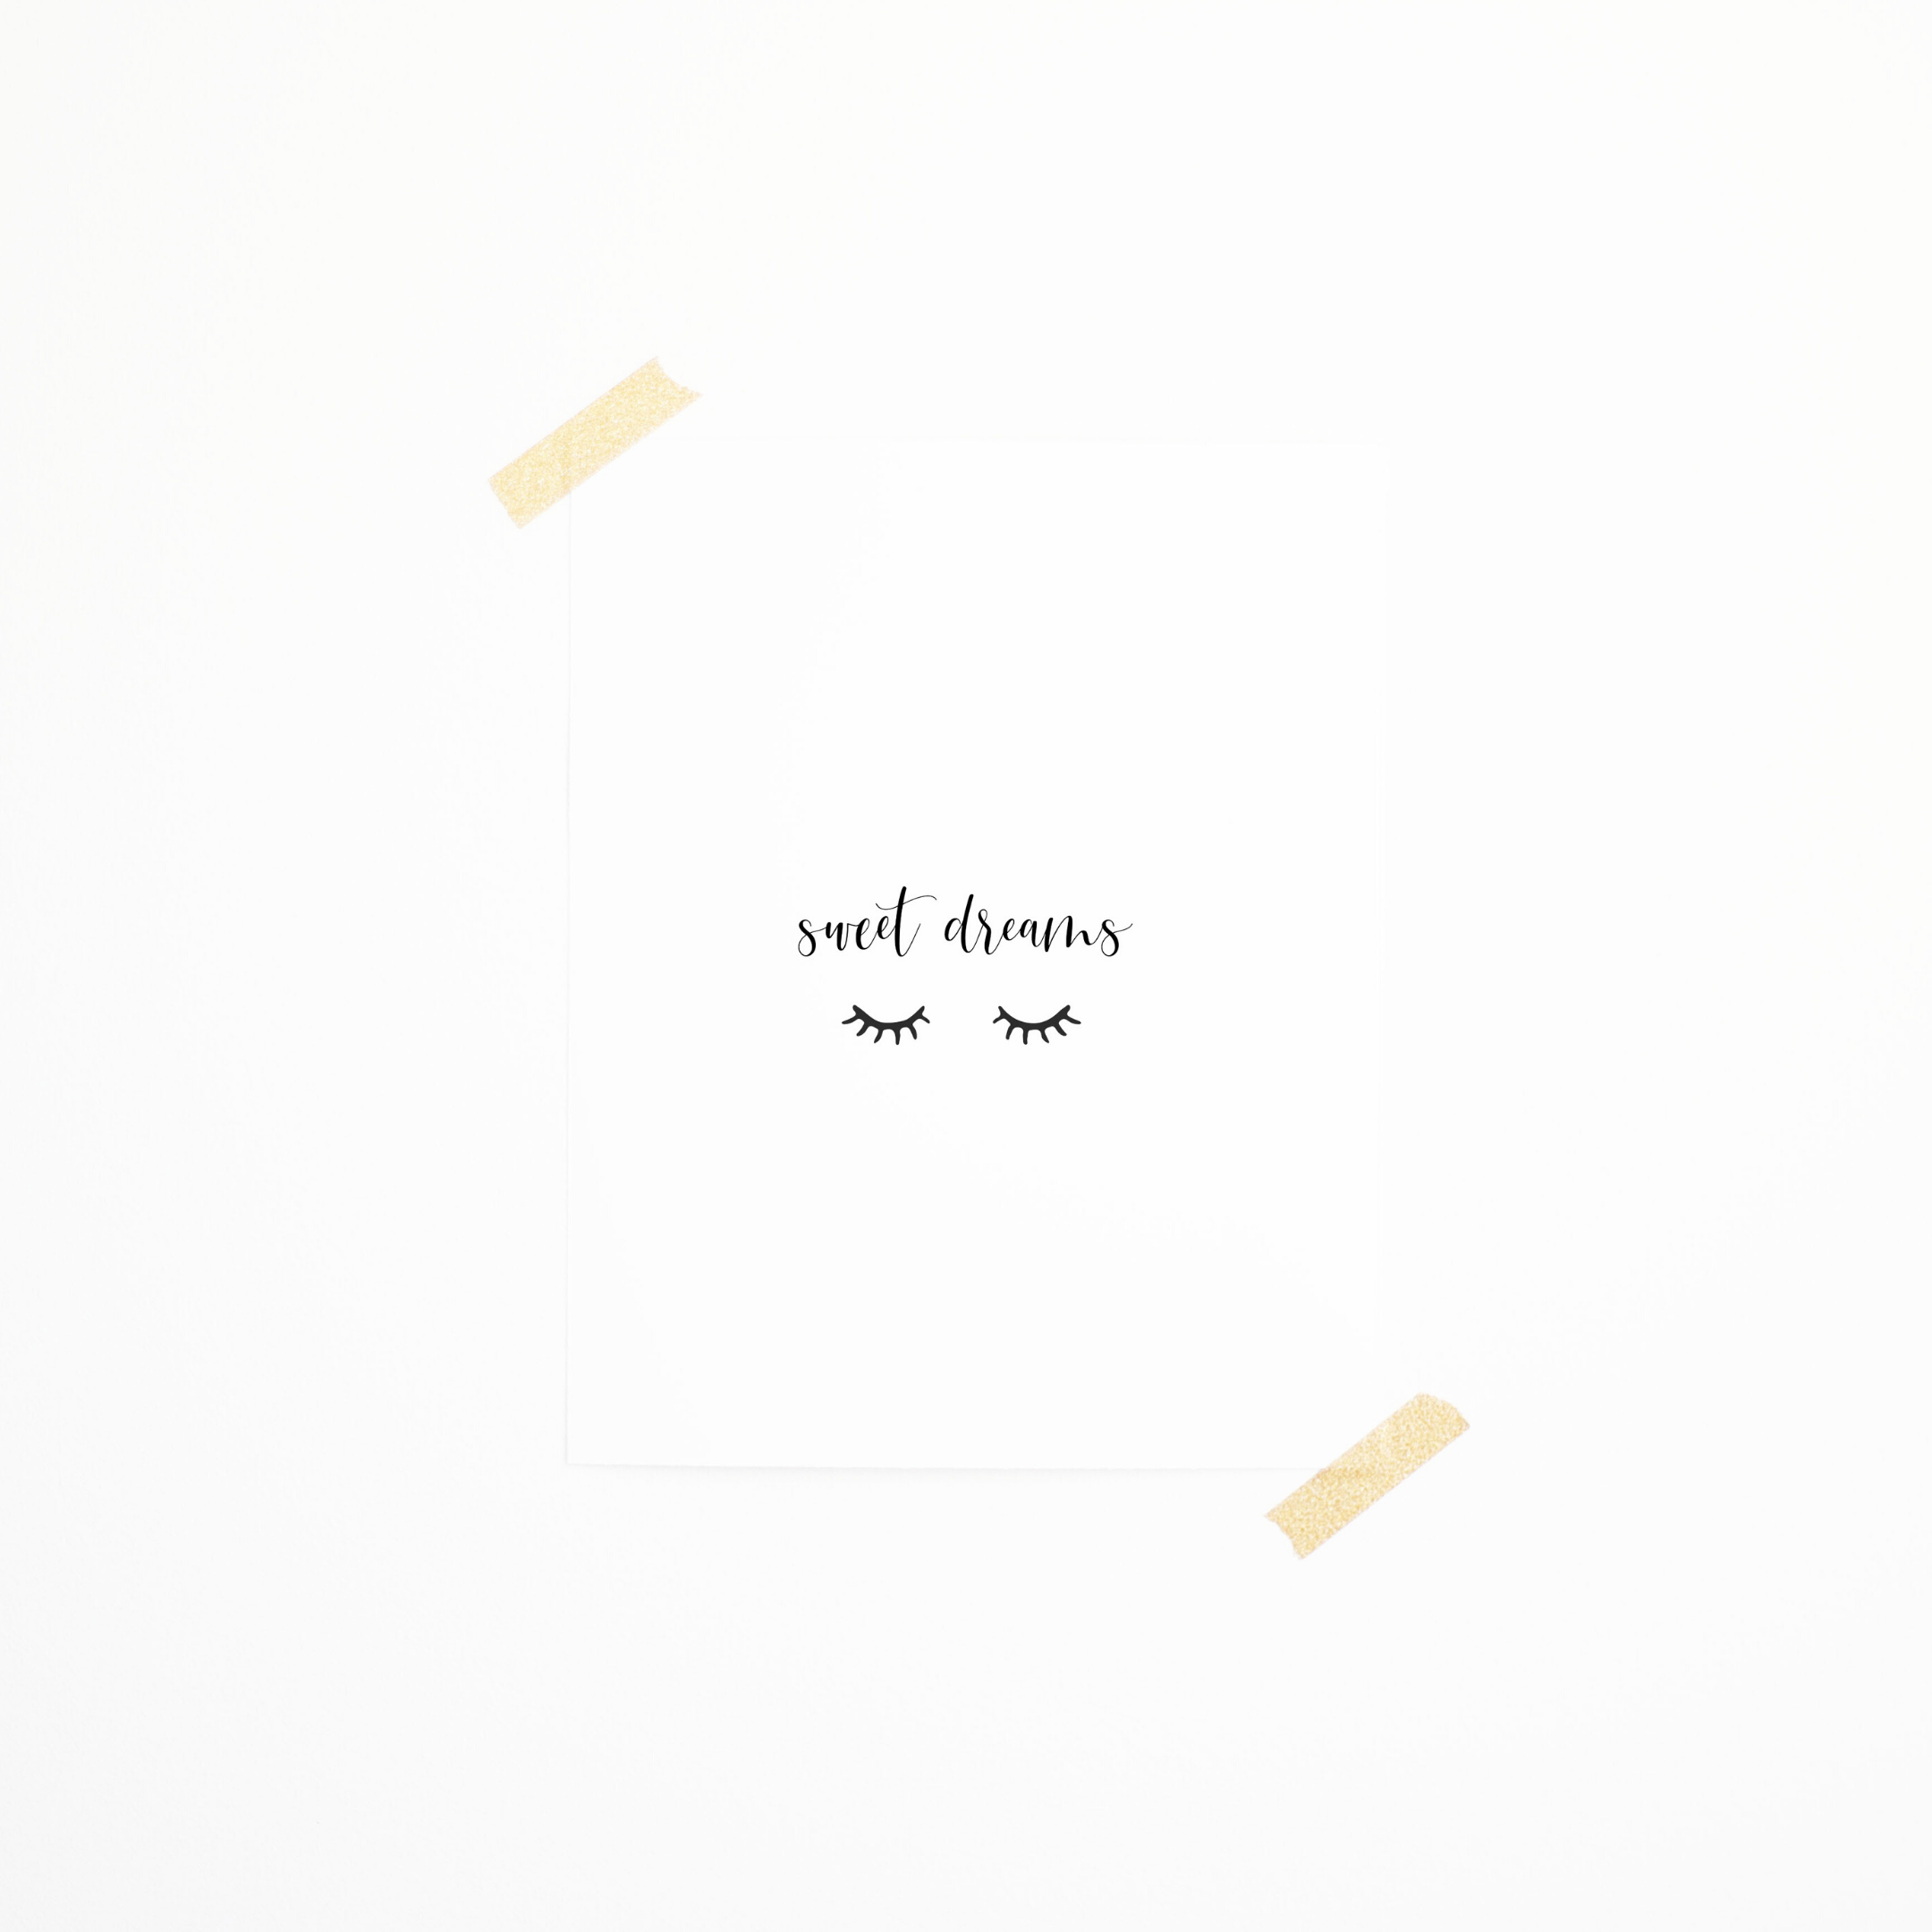 Sweet Dreams Print – PINK LEMON DECOR